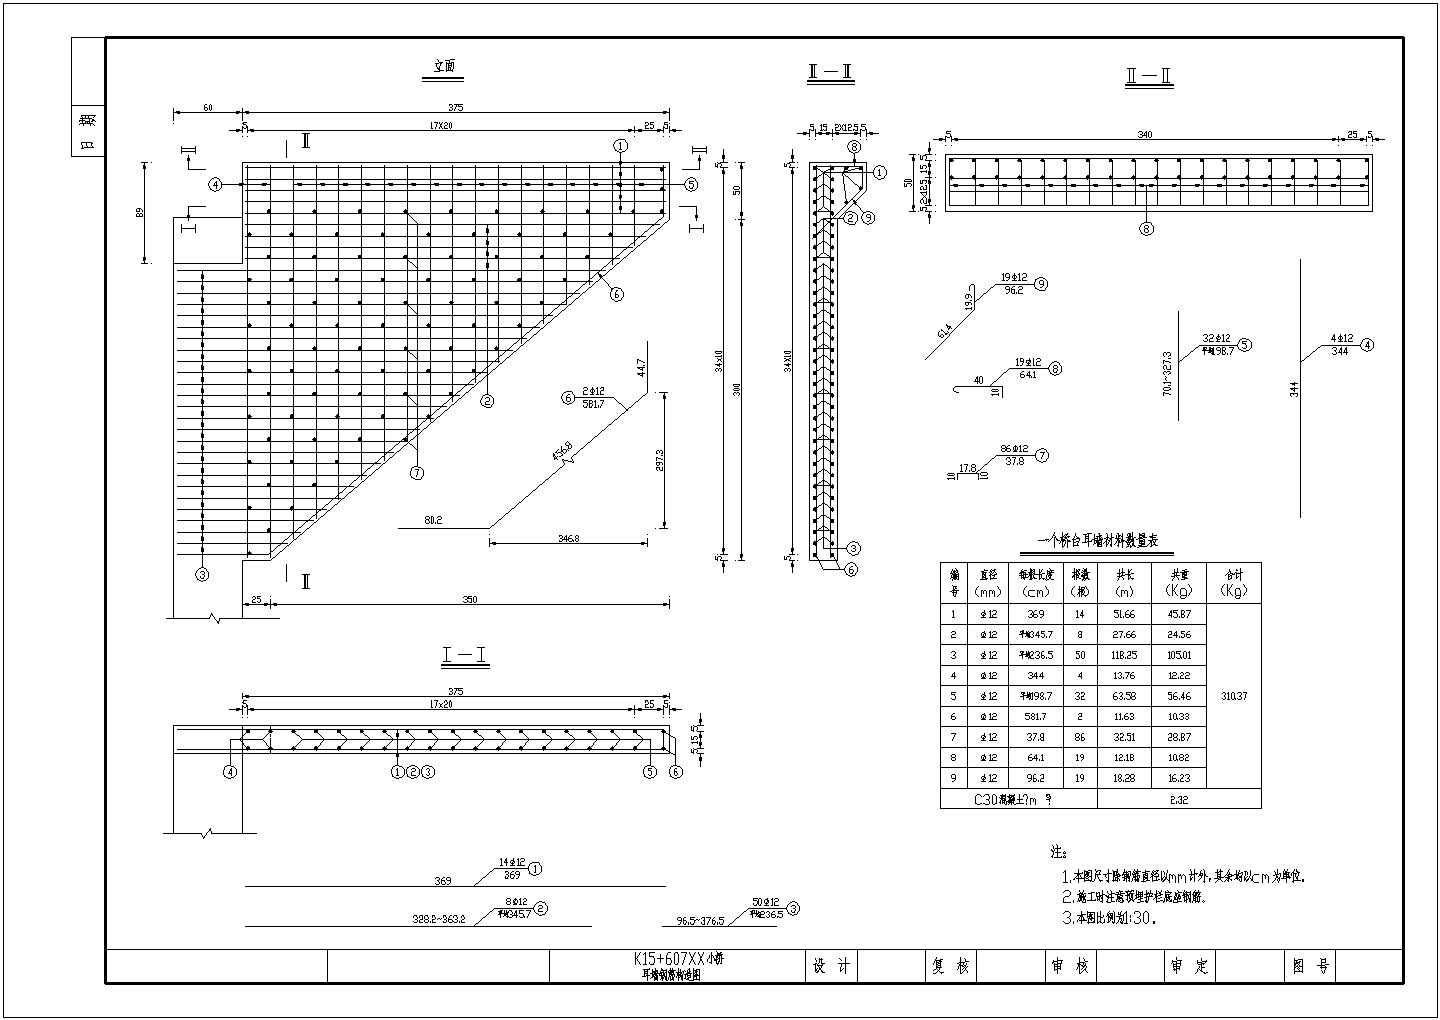 2×10m预应力混凝土简支空心板桥耳墙钢筋布置详图